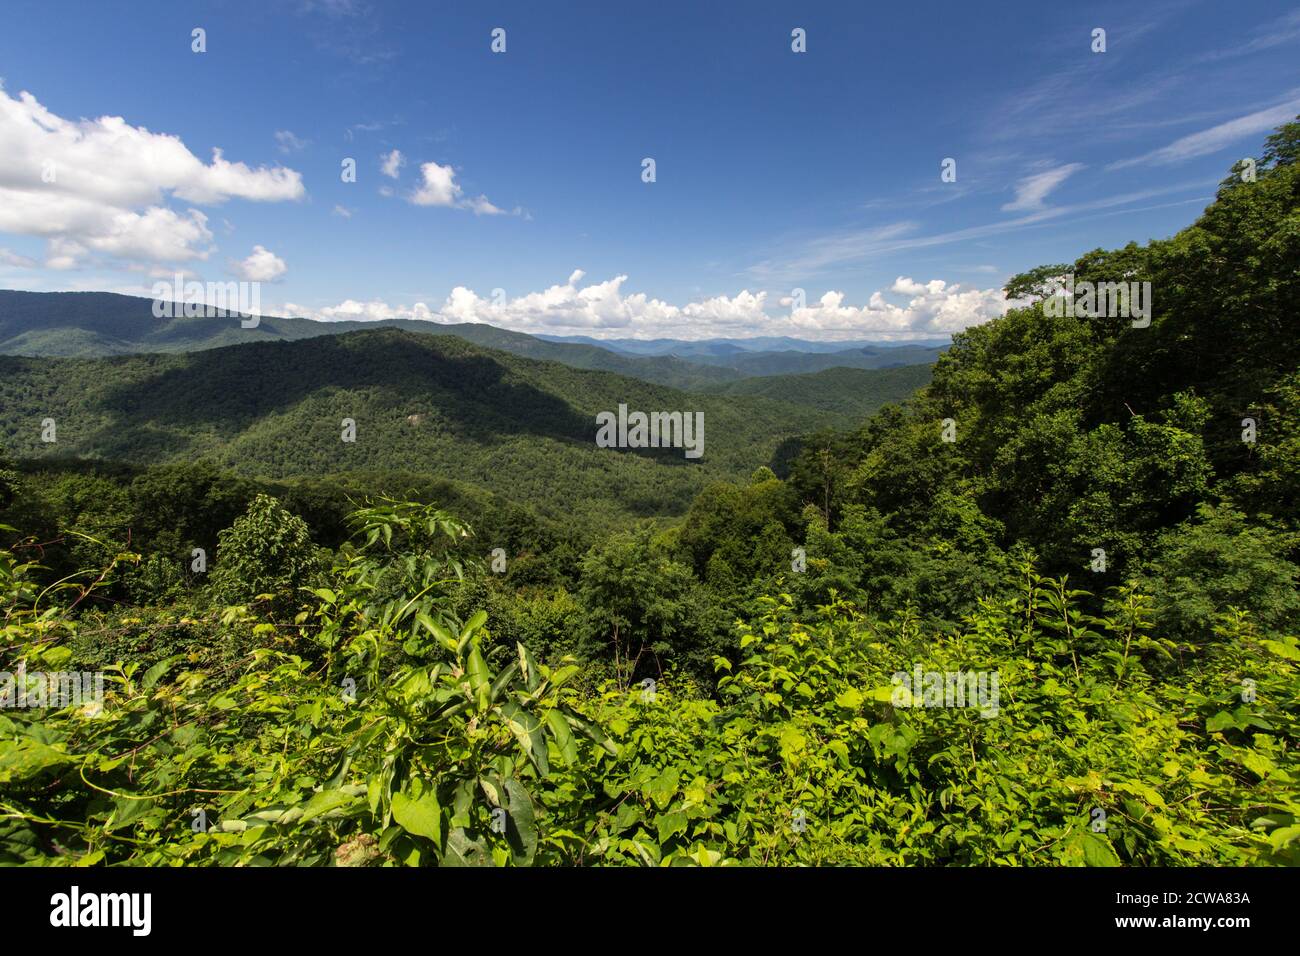 Landschaftlich schöner Blick auf den Appalachian Mountain auf den Foothills Parkway im Great Smoky Mountains National Park von Tennessee. Stockfoto